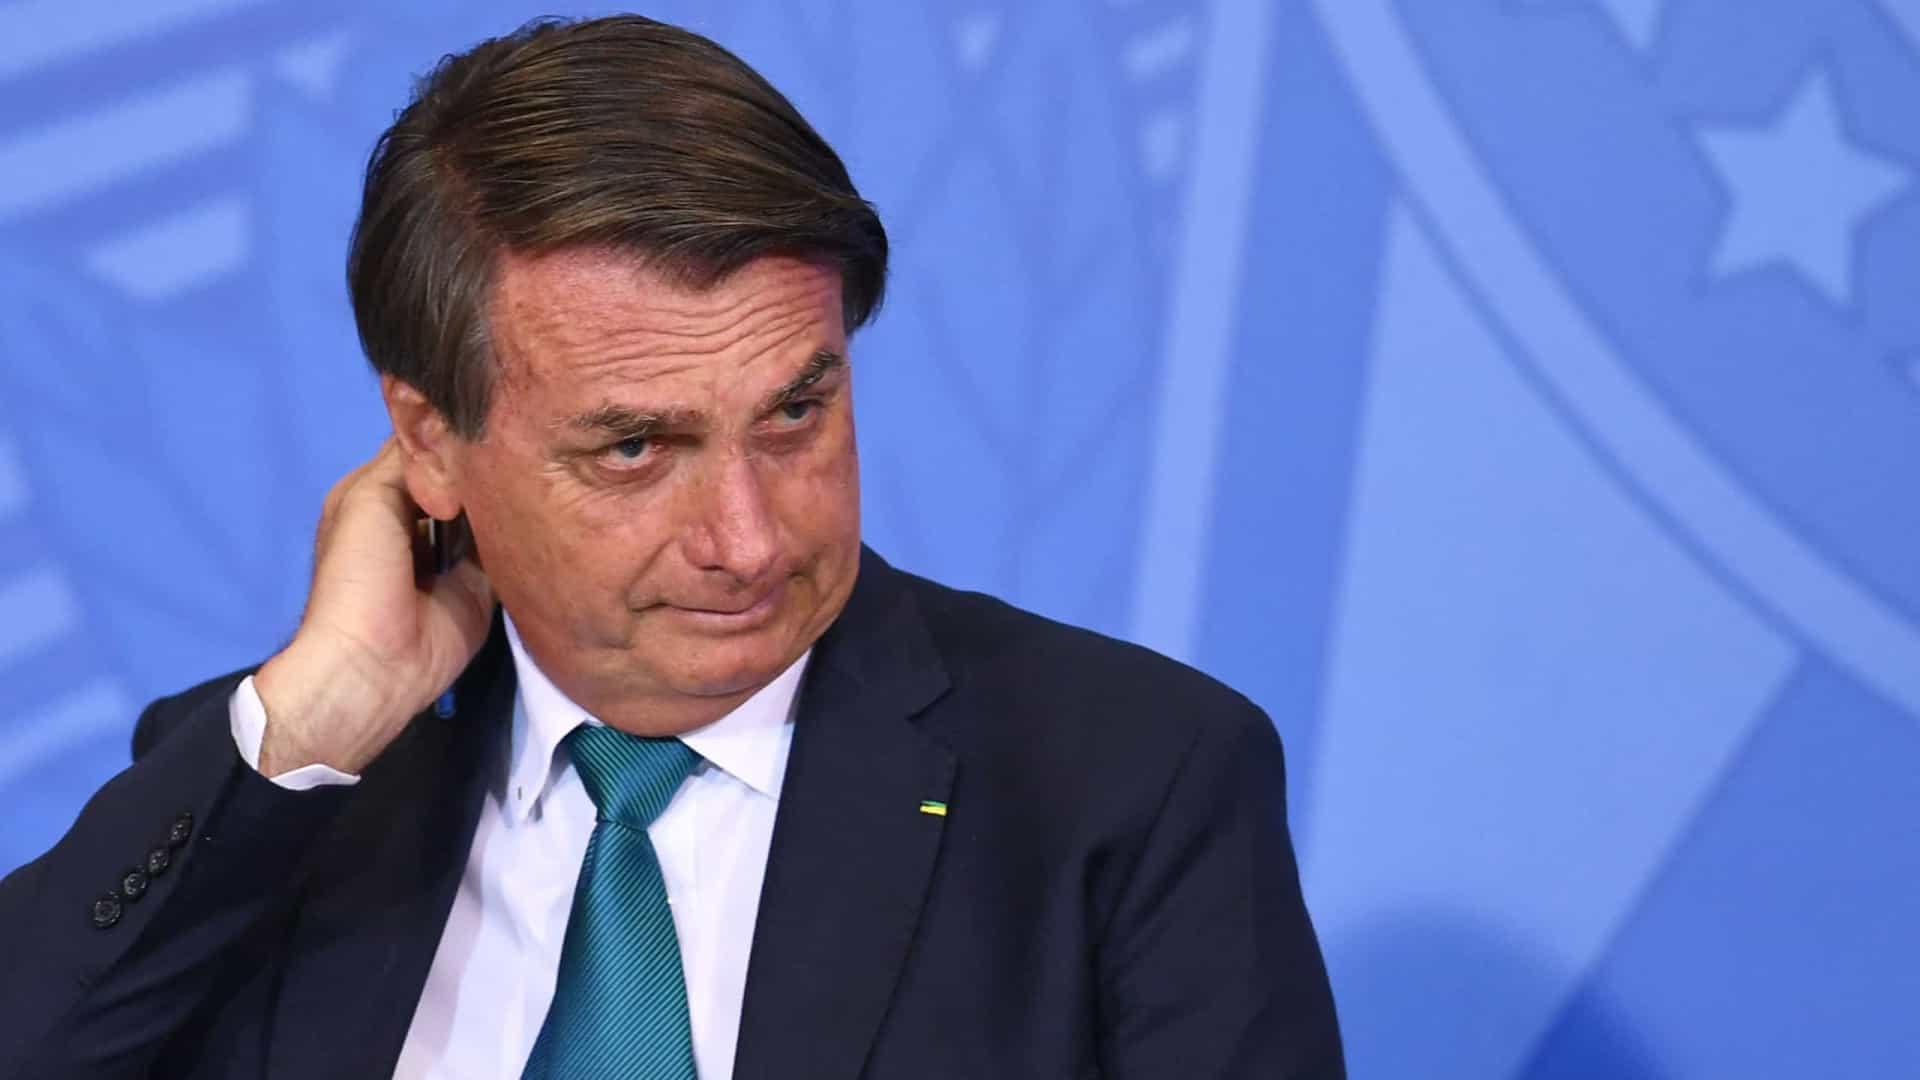 Eleições 2022: 54% consideram o governo Bolsonaro ruim ou péssimo, diz Ipespe